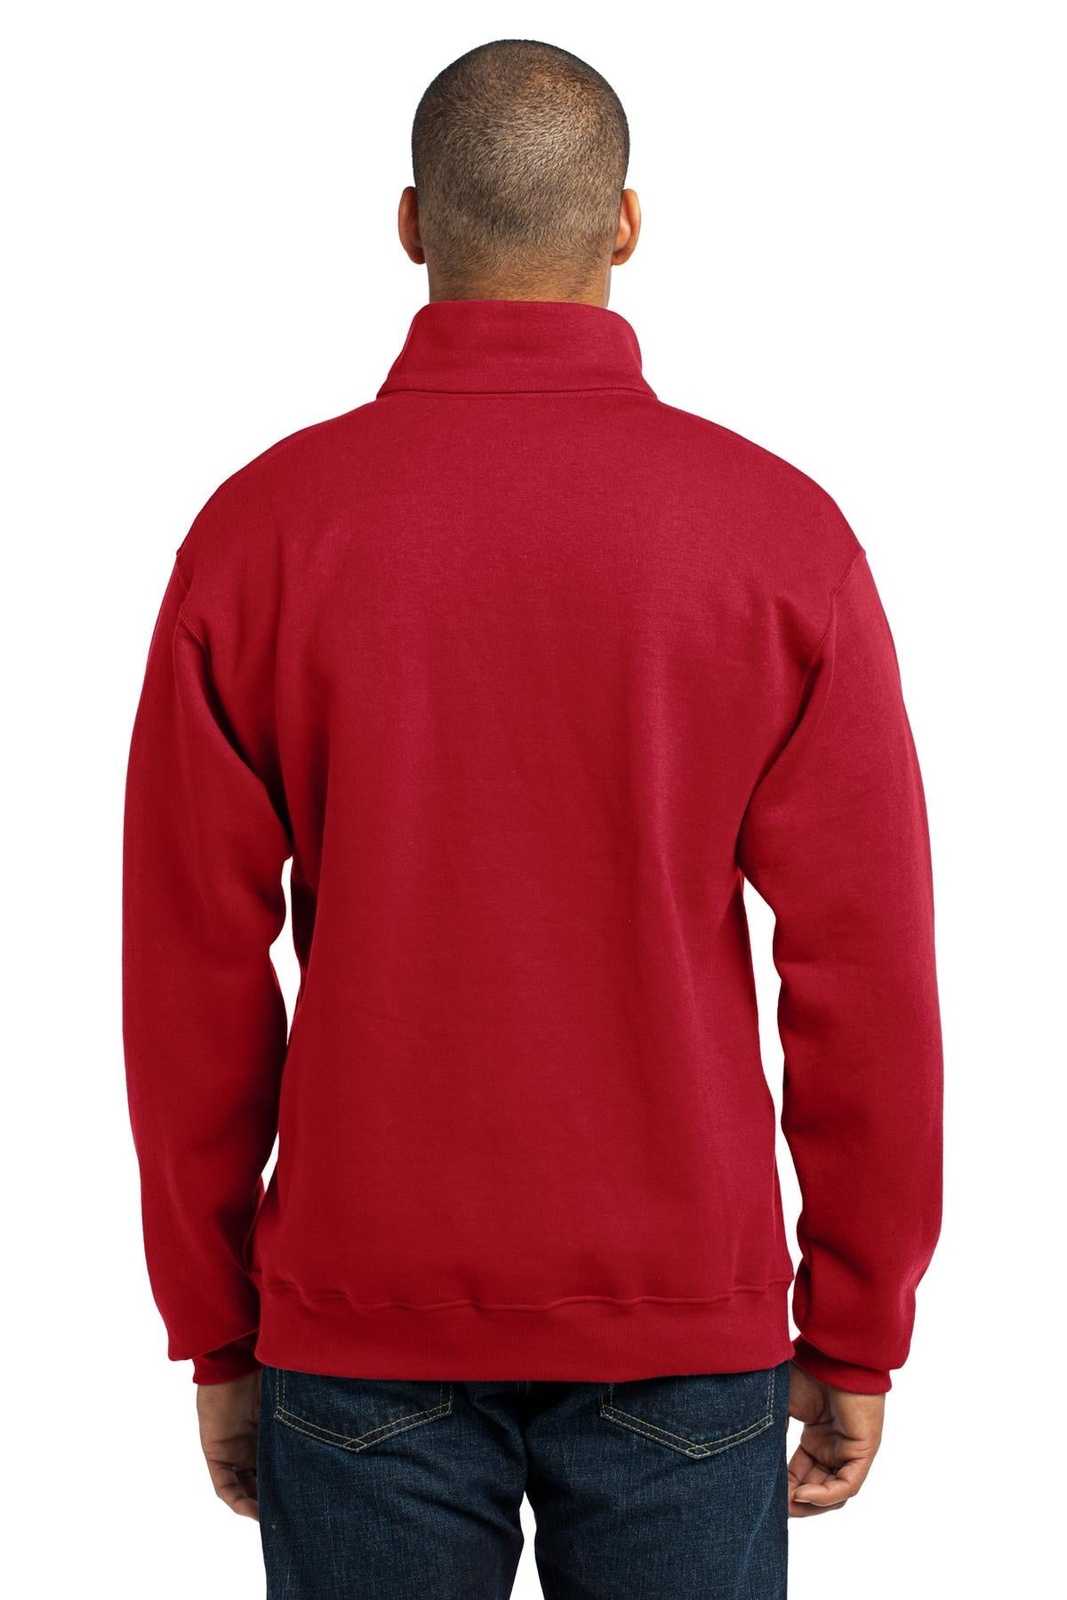 Jerzees 995M Nublend 1/4-Zip Cadet Collar Sweatshirt - True Red - HIT a Double